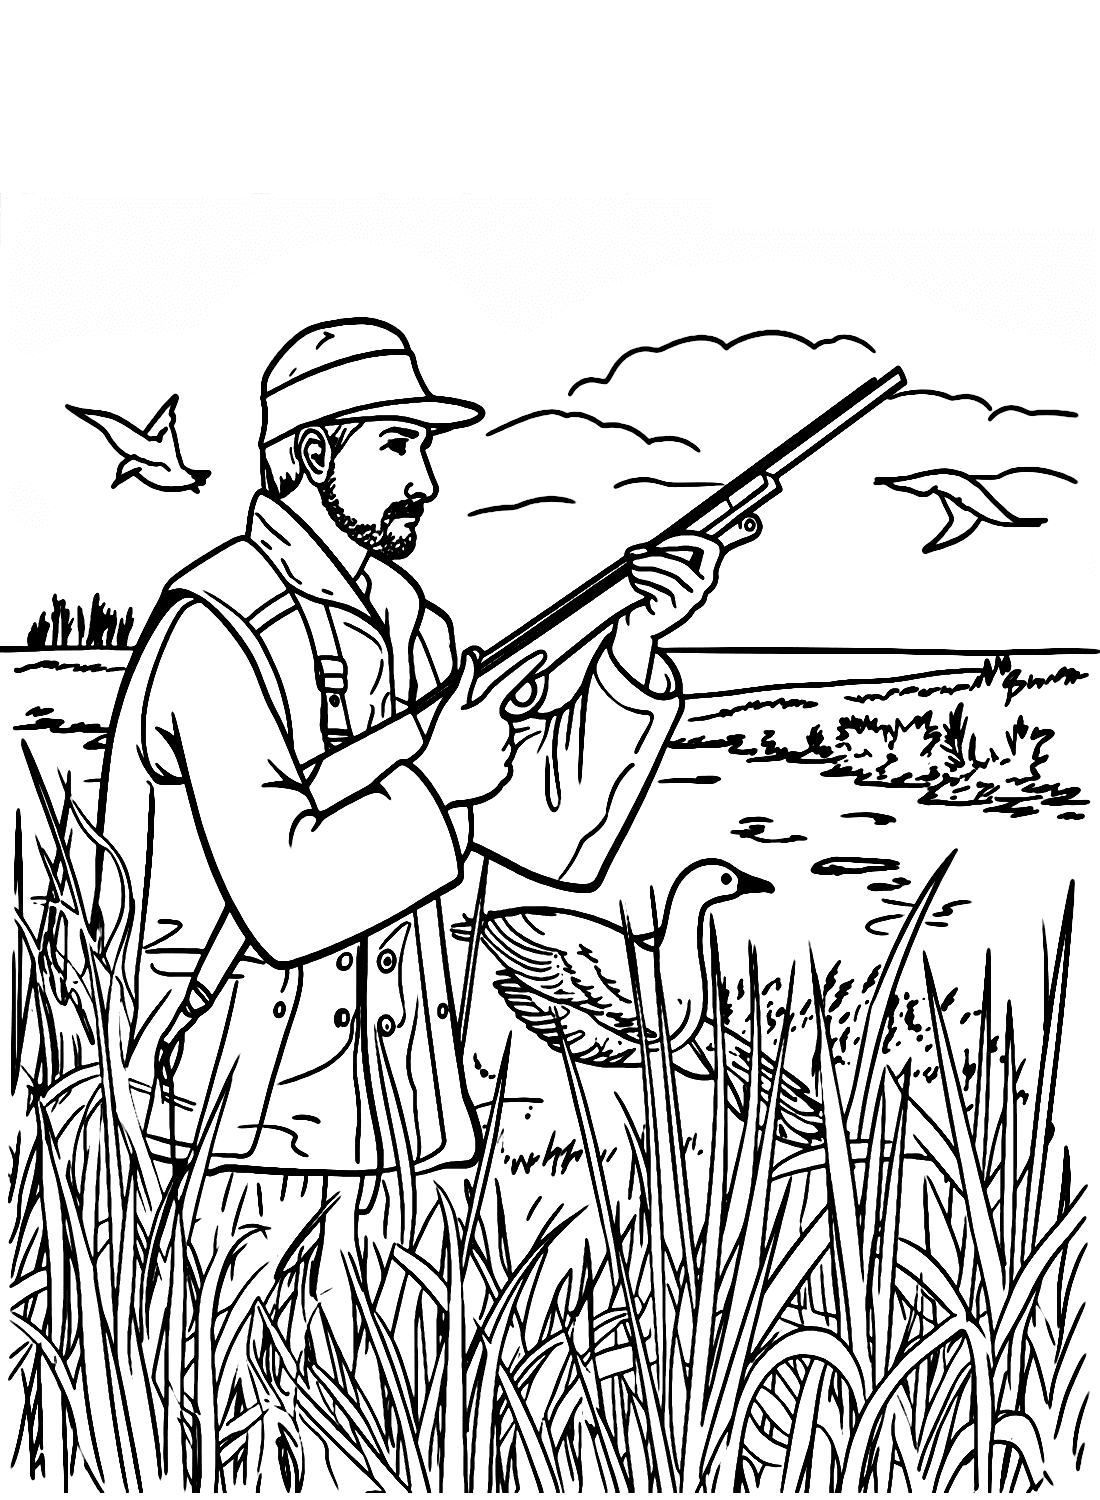 Hombre cazando patos en el campo de caza.